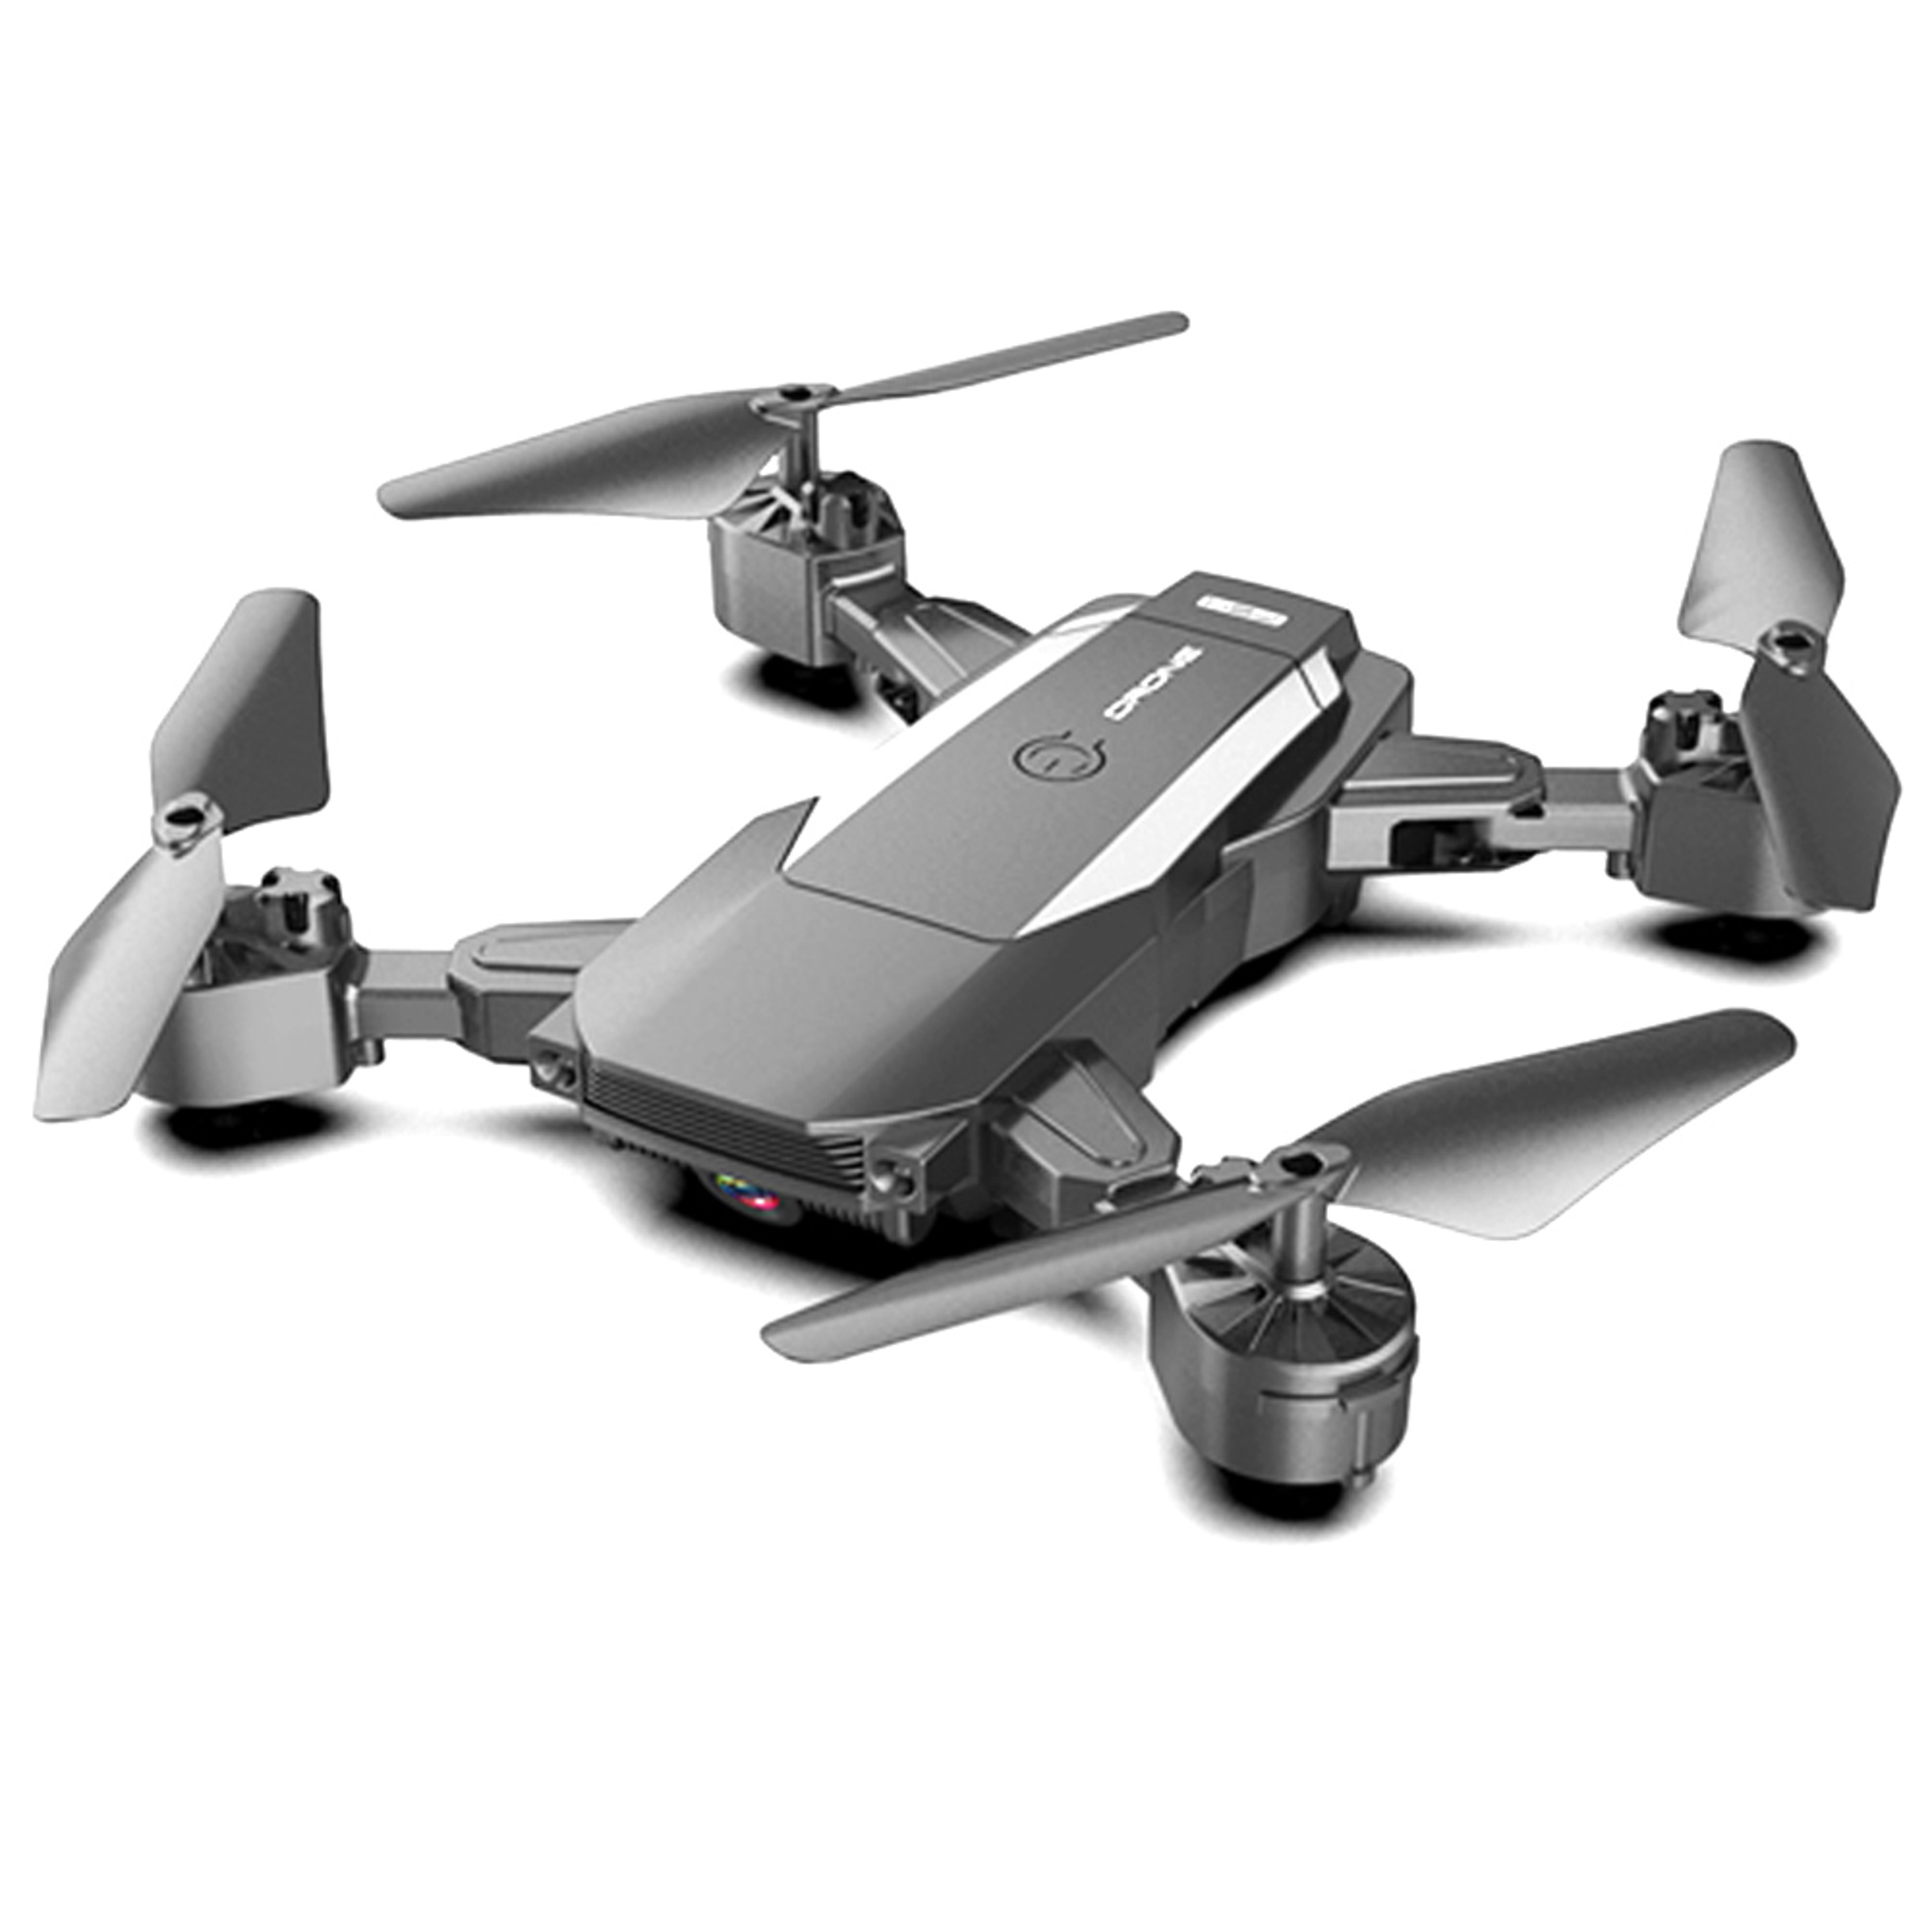 Dron Con Camara Hd Funcion Retorno Klack - Negro - F84w  MKP